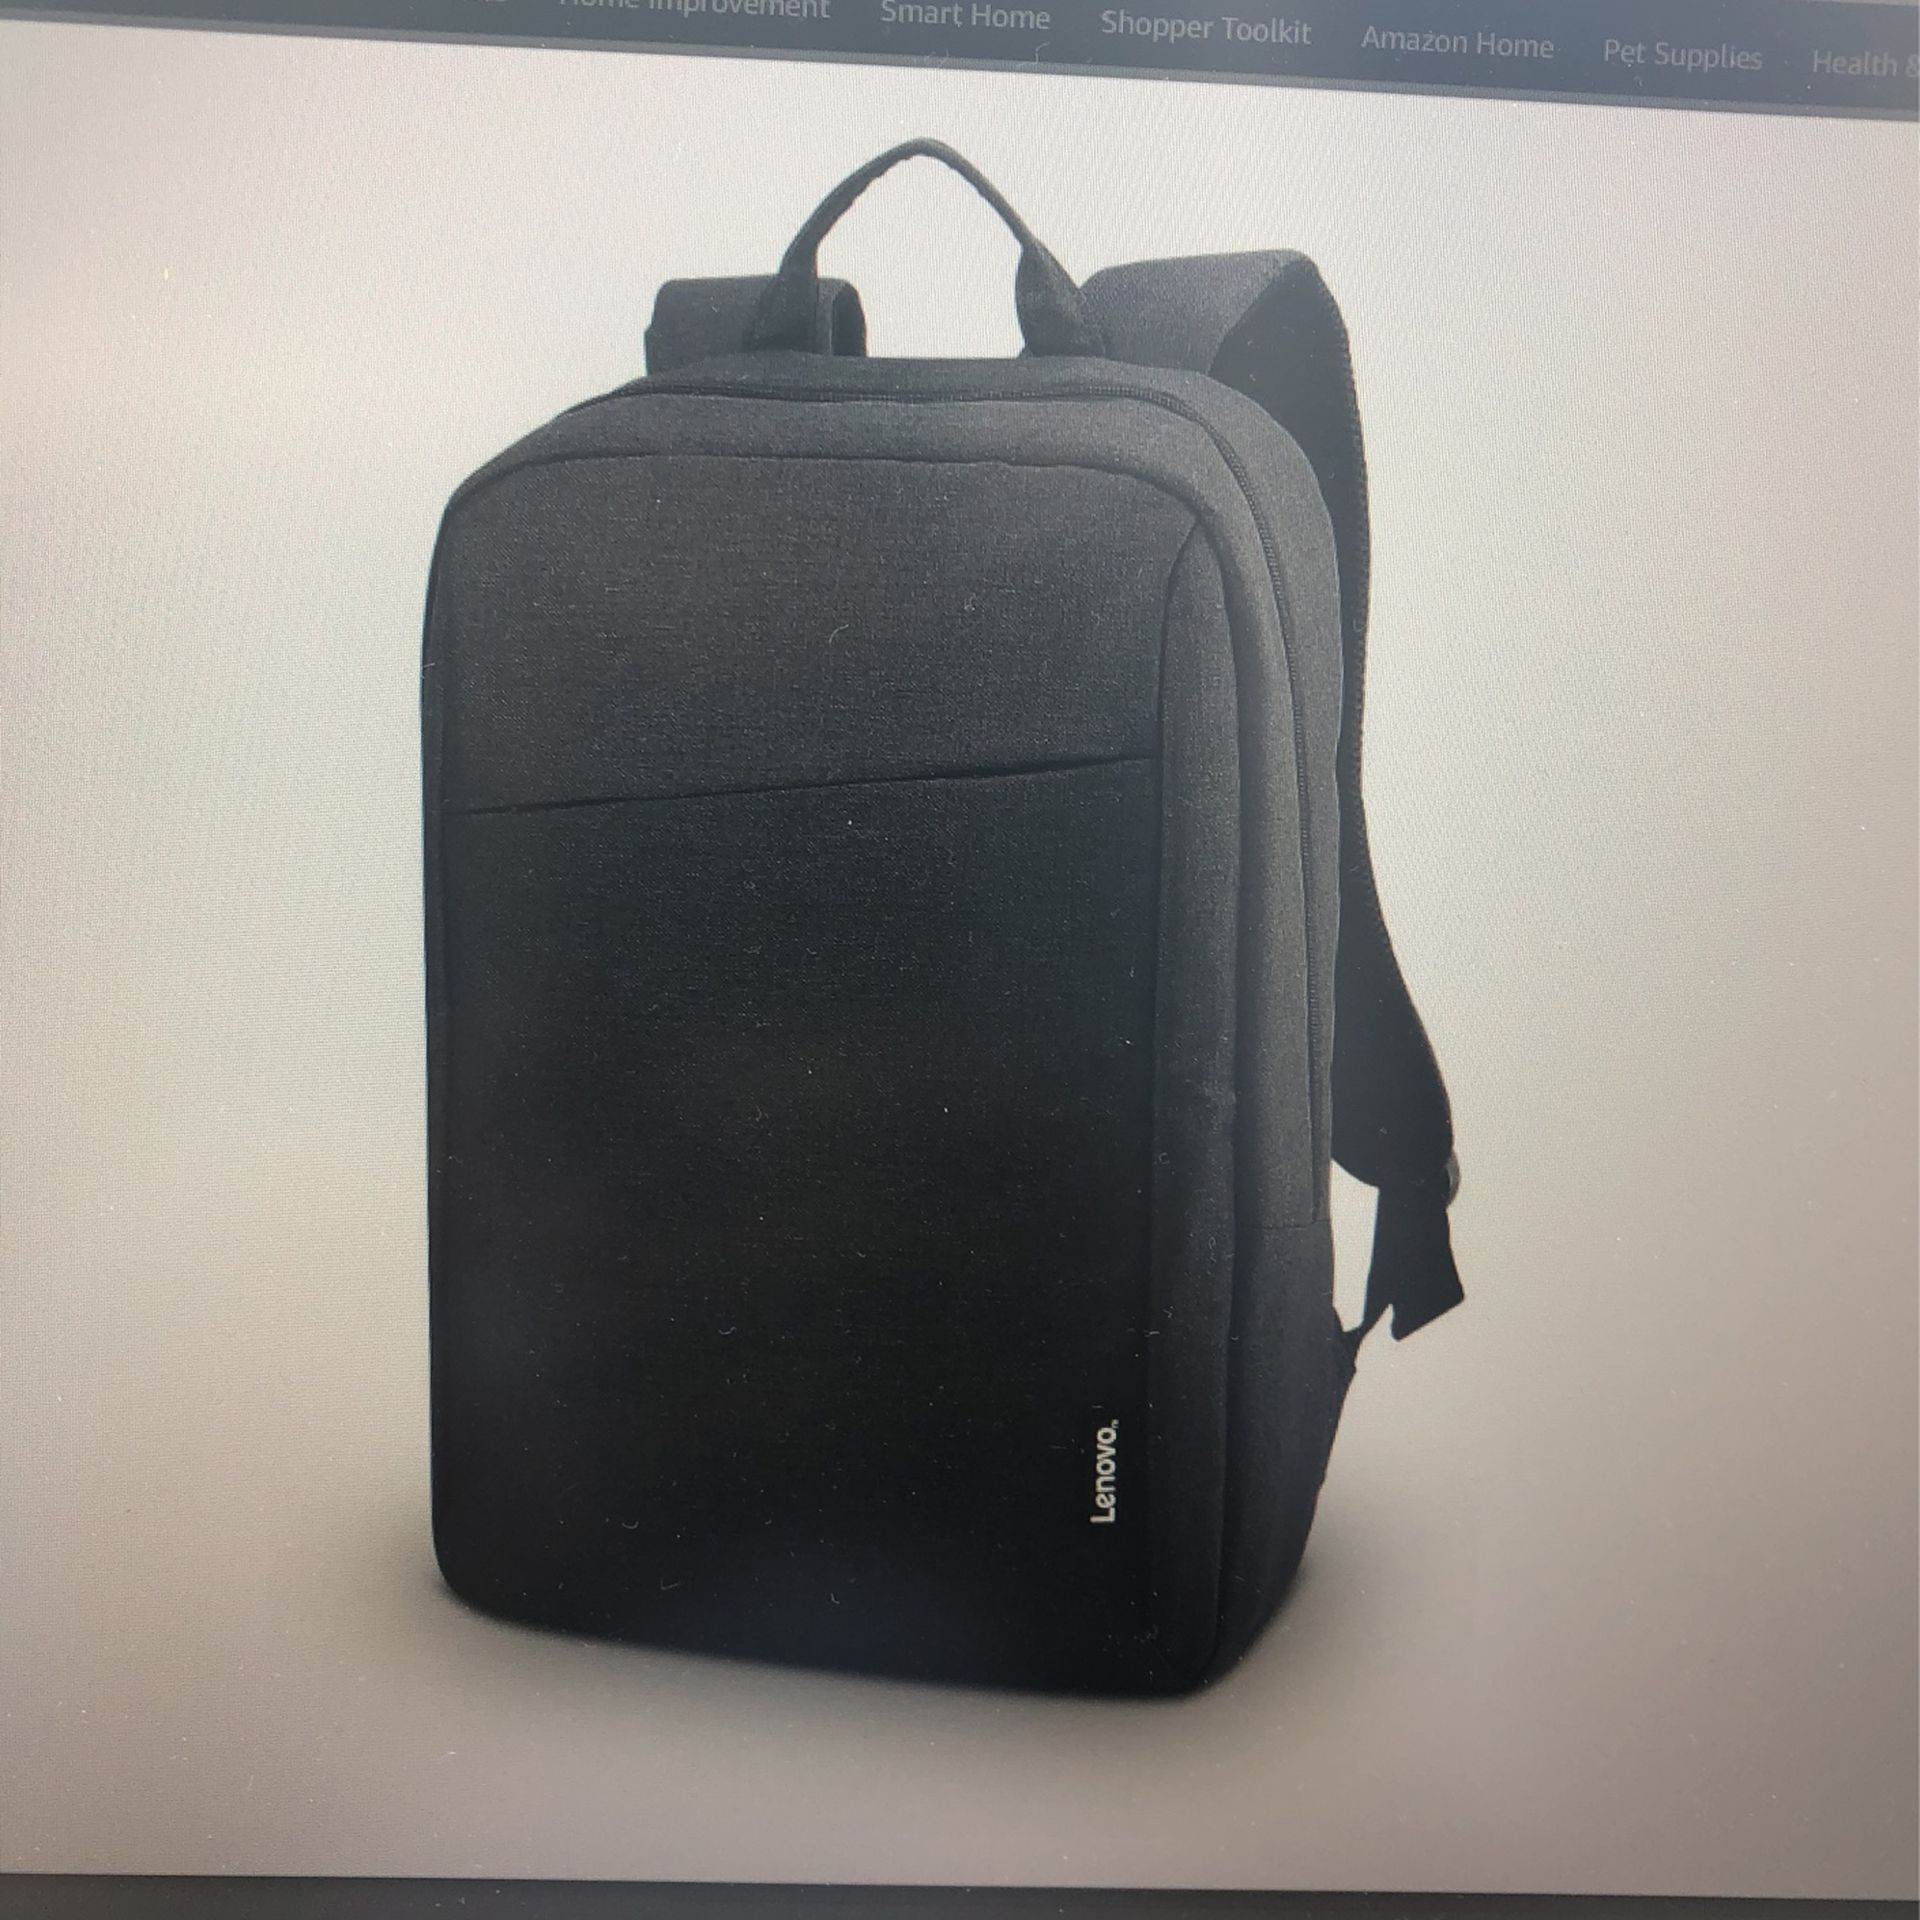 Brand New Lenovo 15 Inch Laptop Backpack